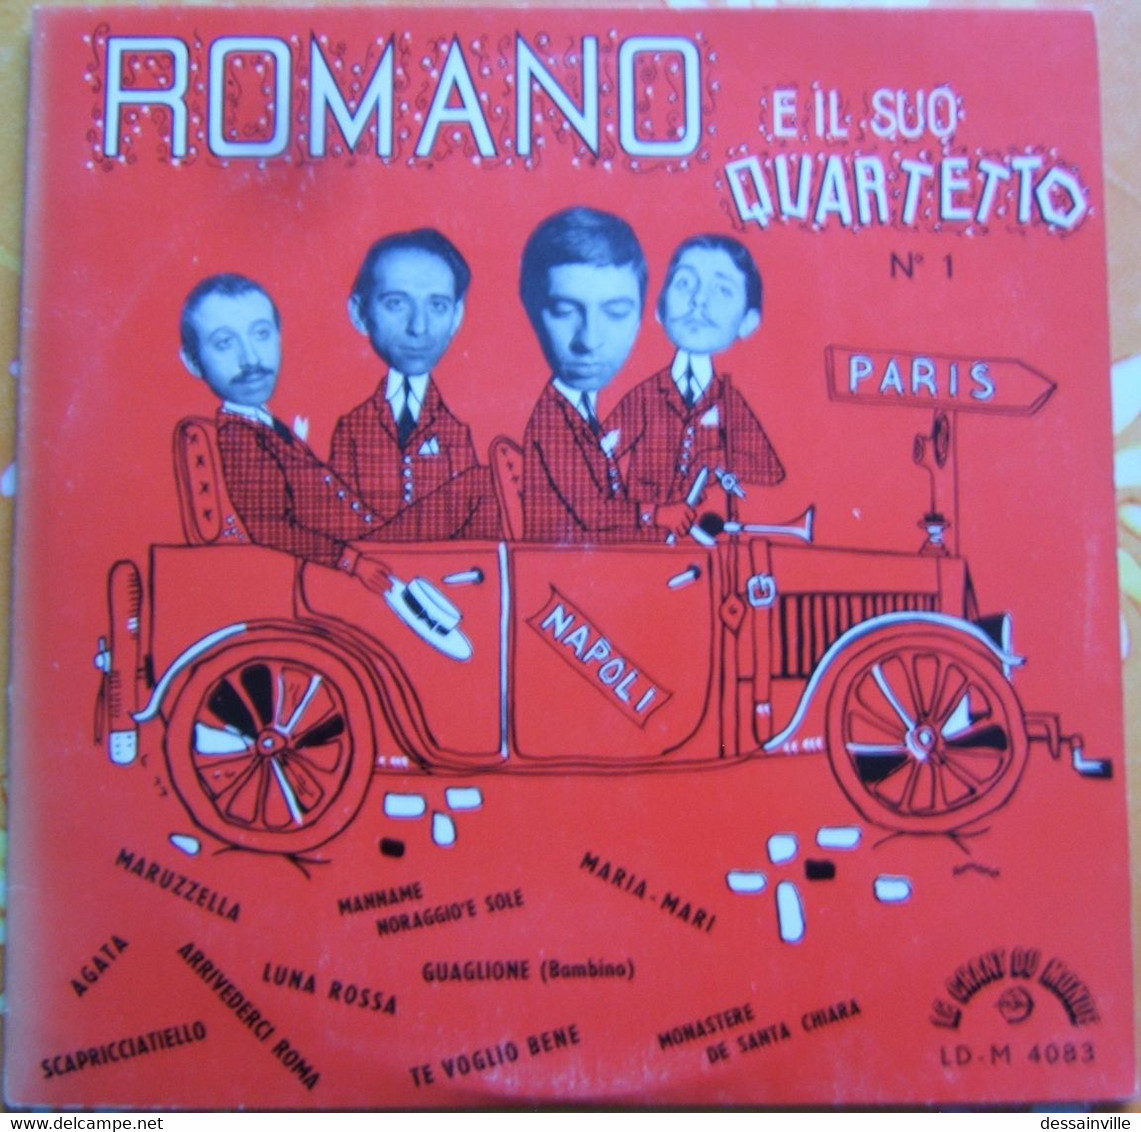 33 Tours 25 Cm - ROMANO E Il Suo Quartetto N° 1 - Sonstige - Italienische Musik